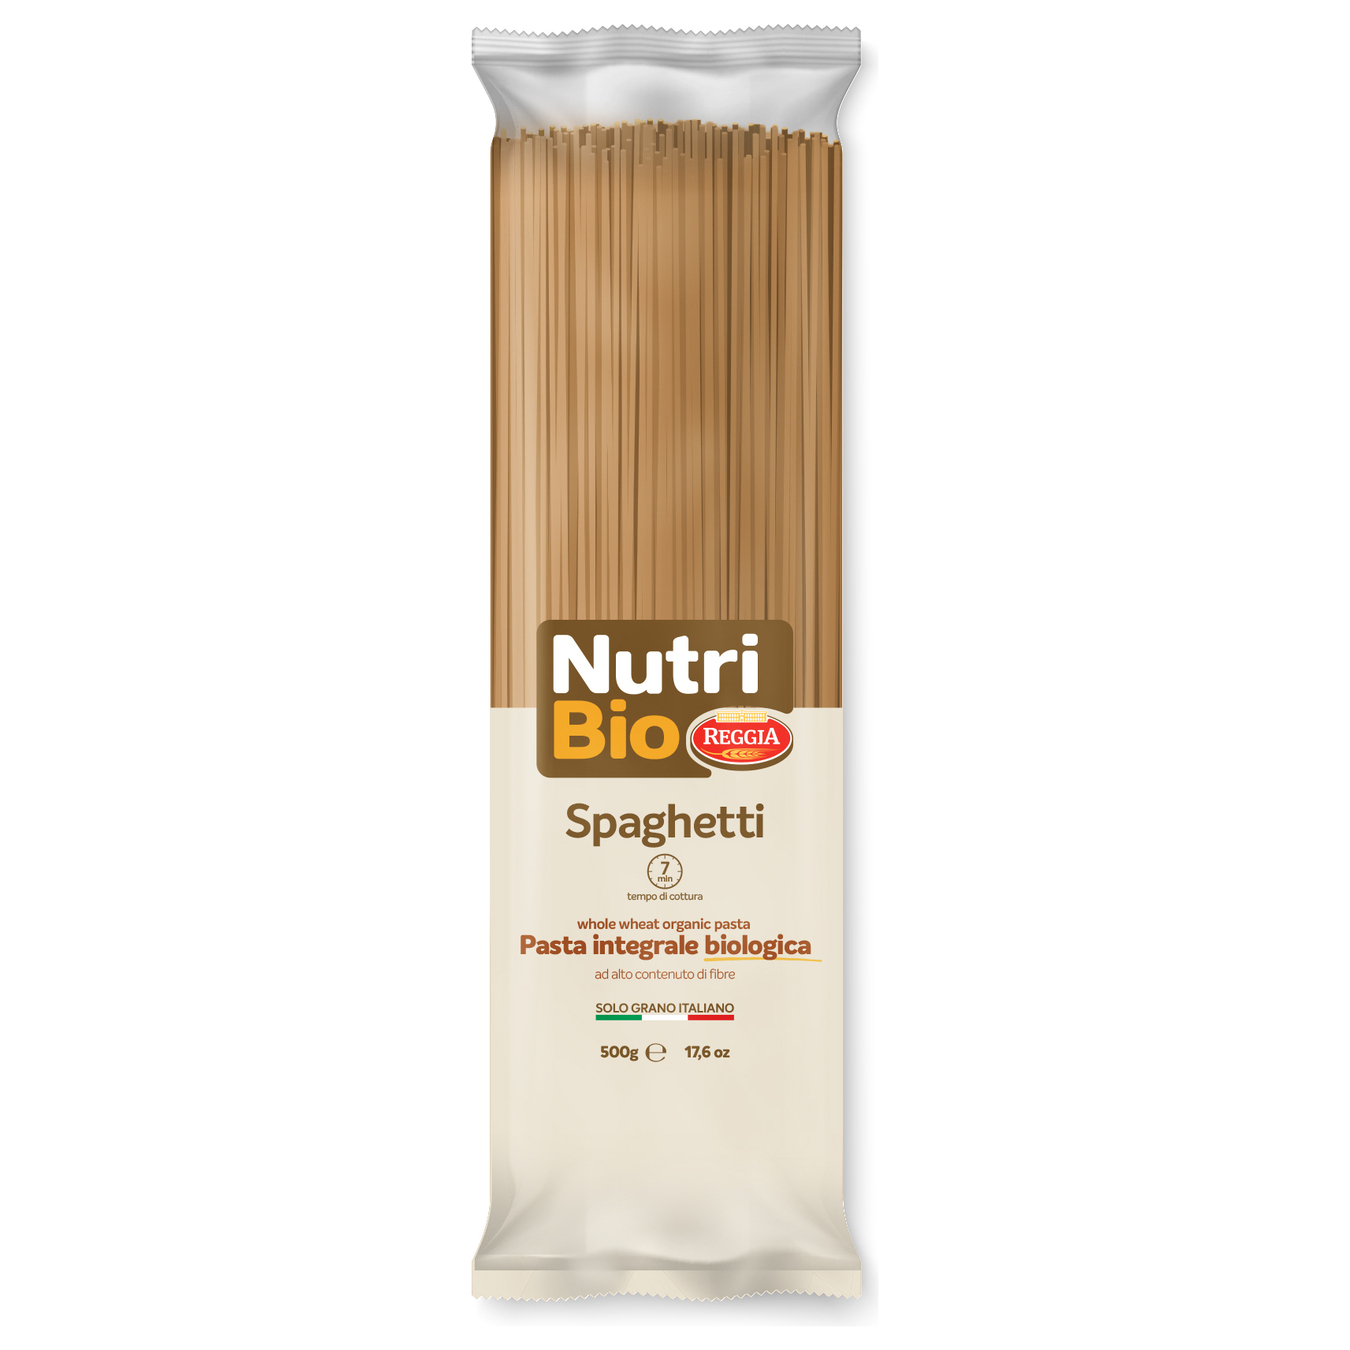 Pasta Spaghetti NutriBio Reggia 500г